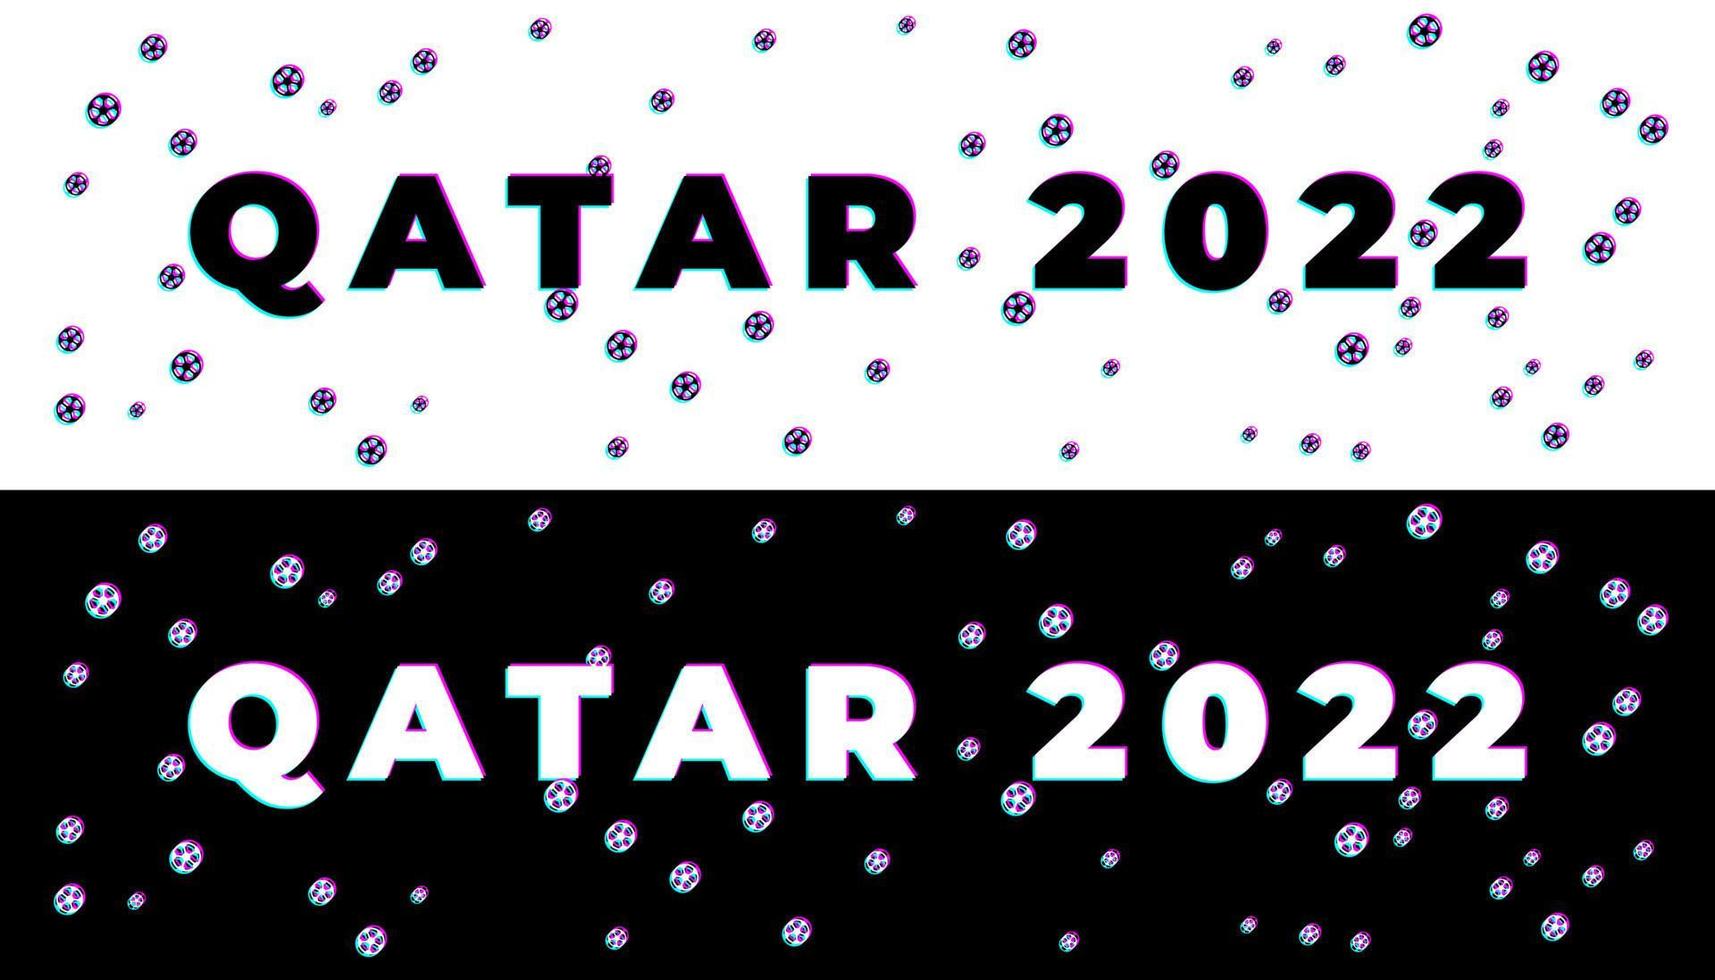 fond de pépin de tournoi de football qatar 2022. modèle de football d'illustration vectorielle pour bannière, carte, site Web. couleur bordeaux drapeau national qatar coupe du monde 2022 vecteur